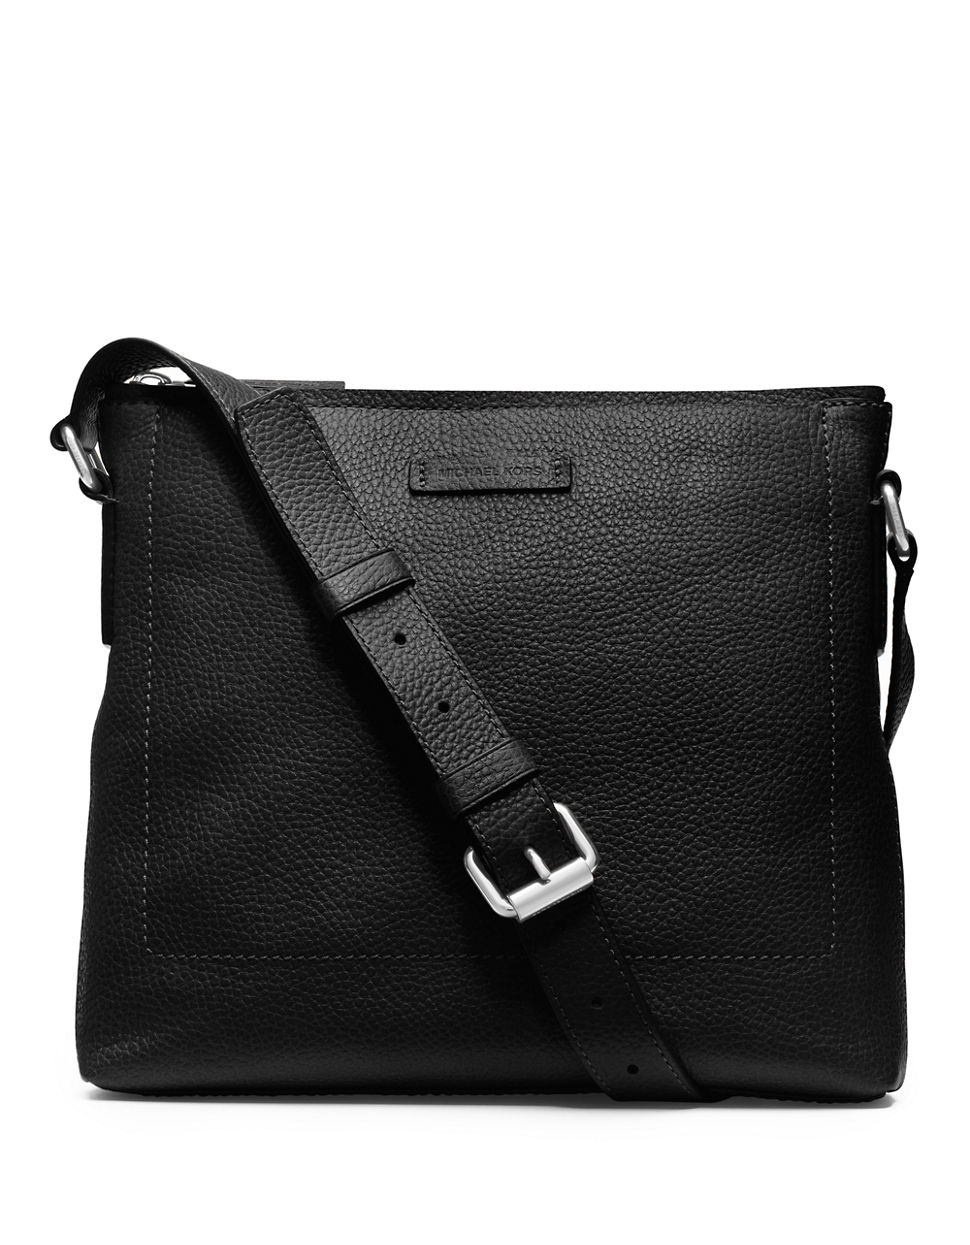 Michael Kors Bryant Leather Slim Messenger Bag in Black for Men - Lyst